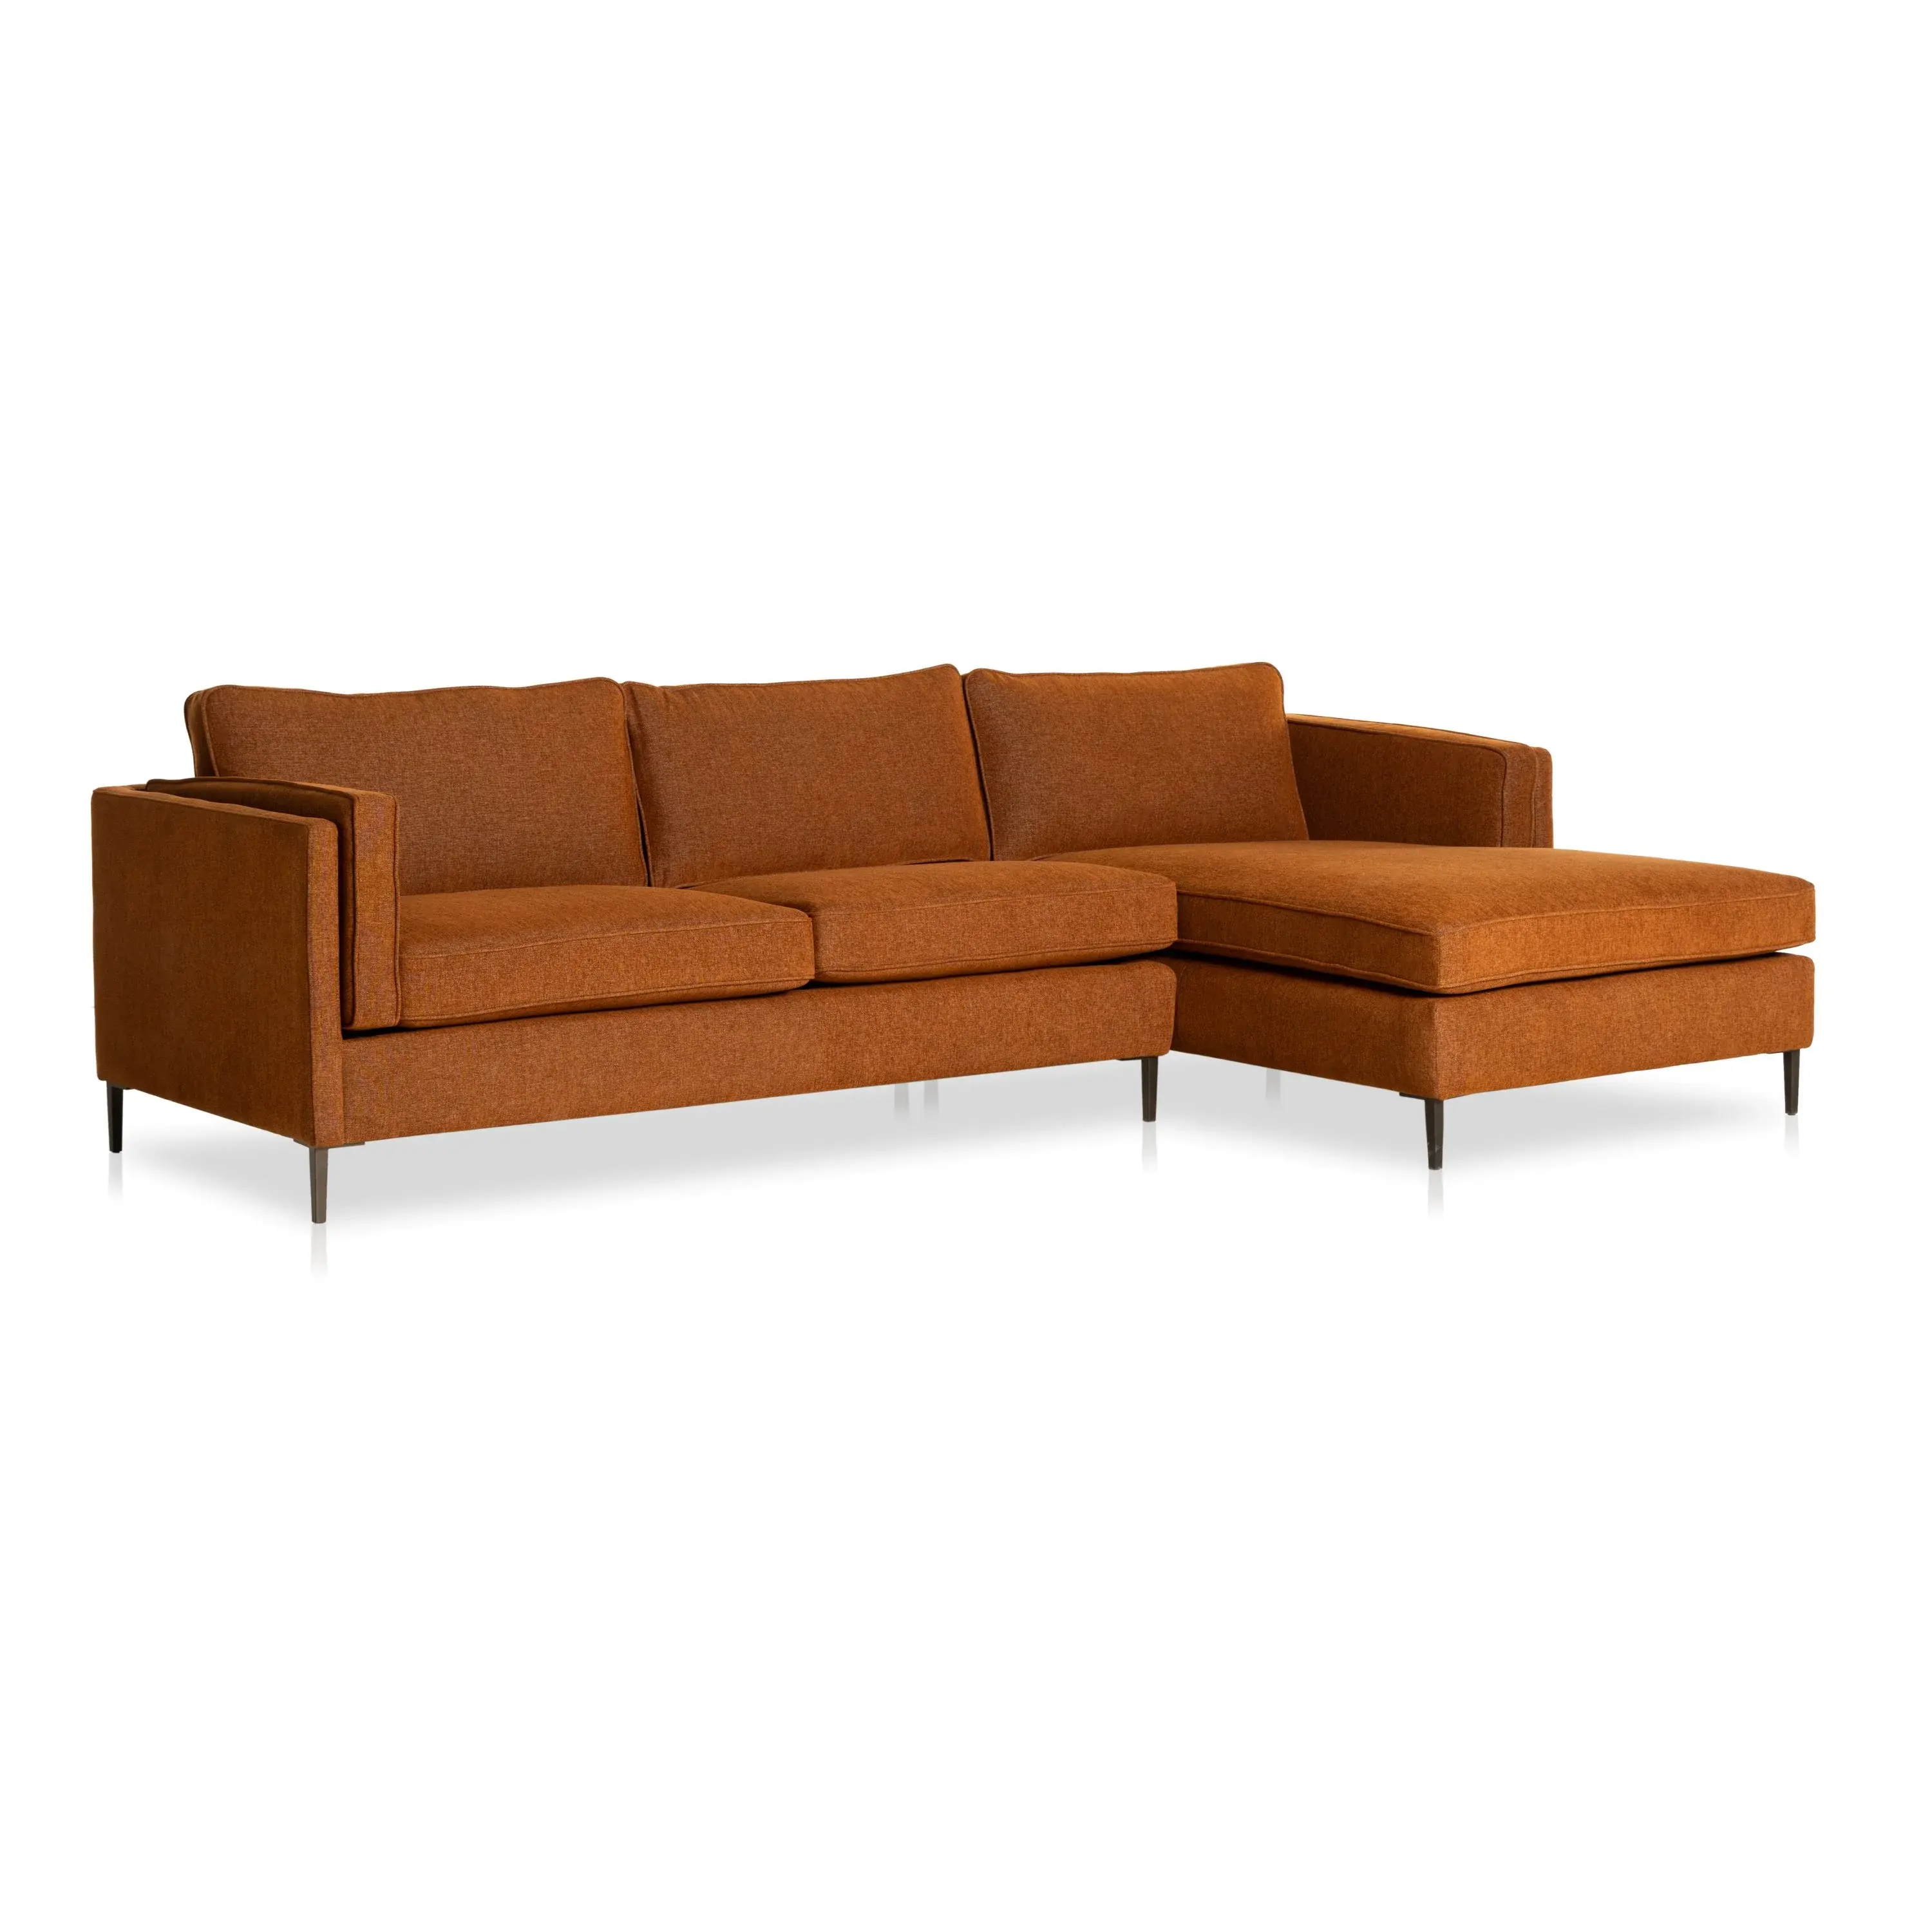 Indonesia più alta in legno di teak divano divano lungo di qualità premium smeria 2 divano componibile fatto a mano